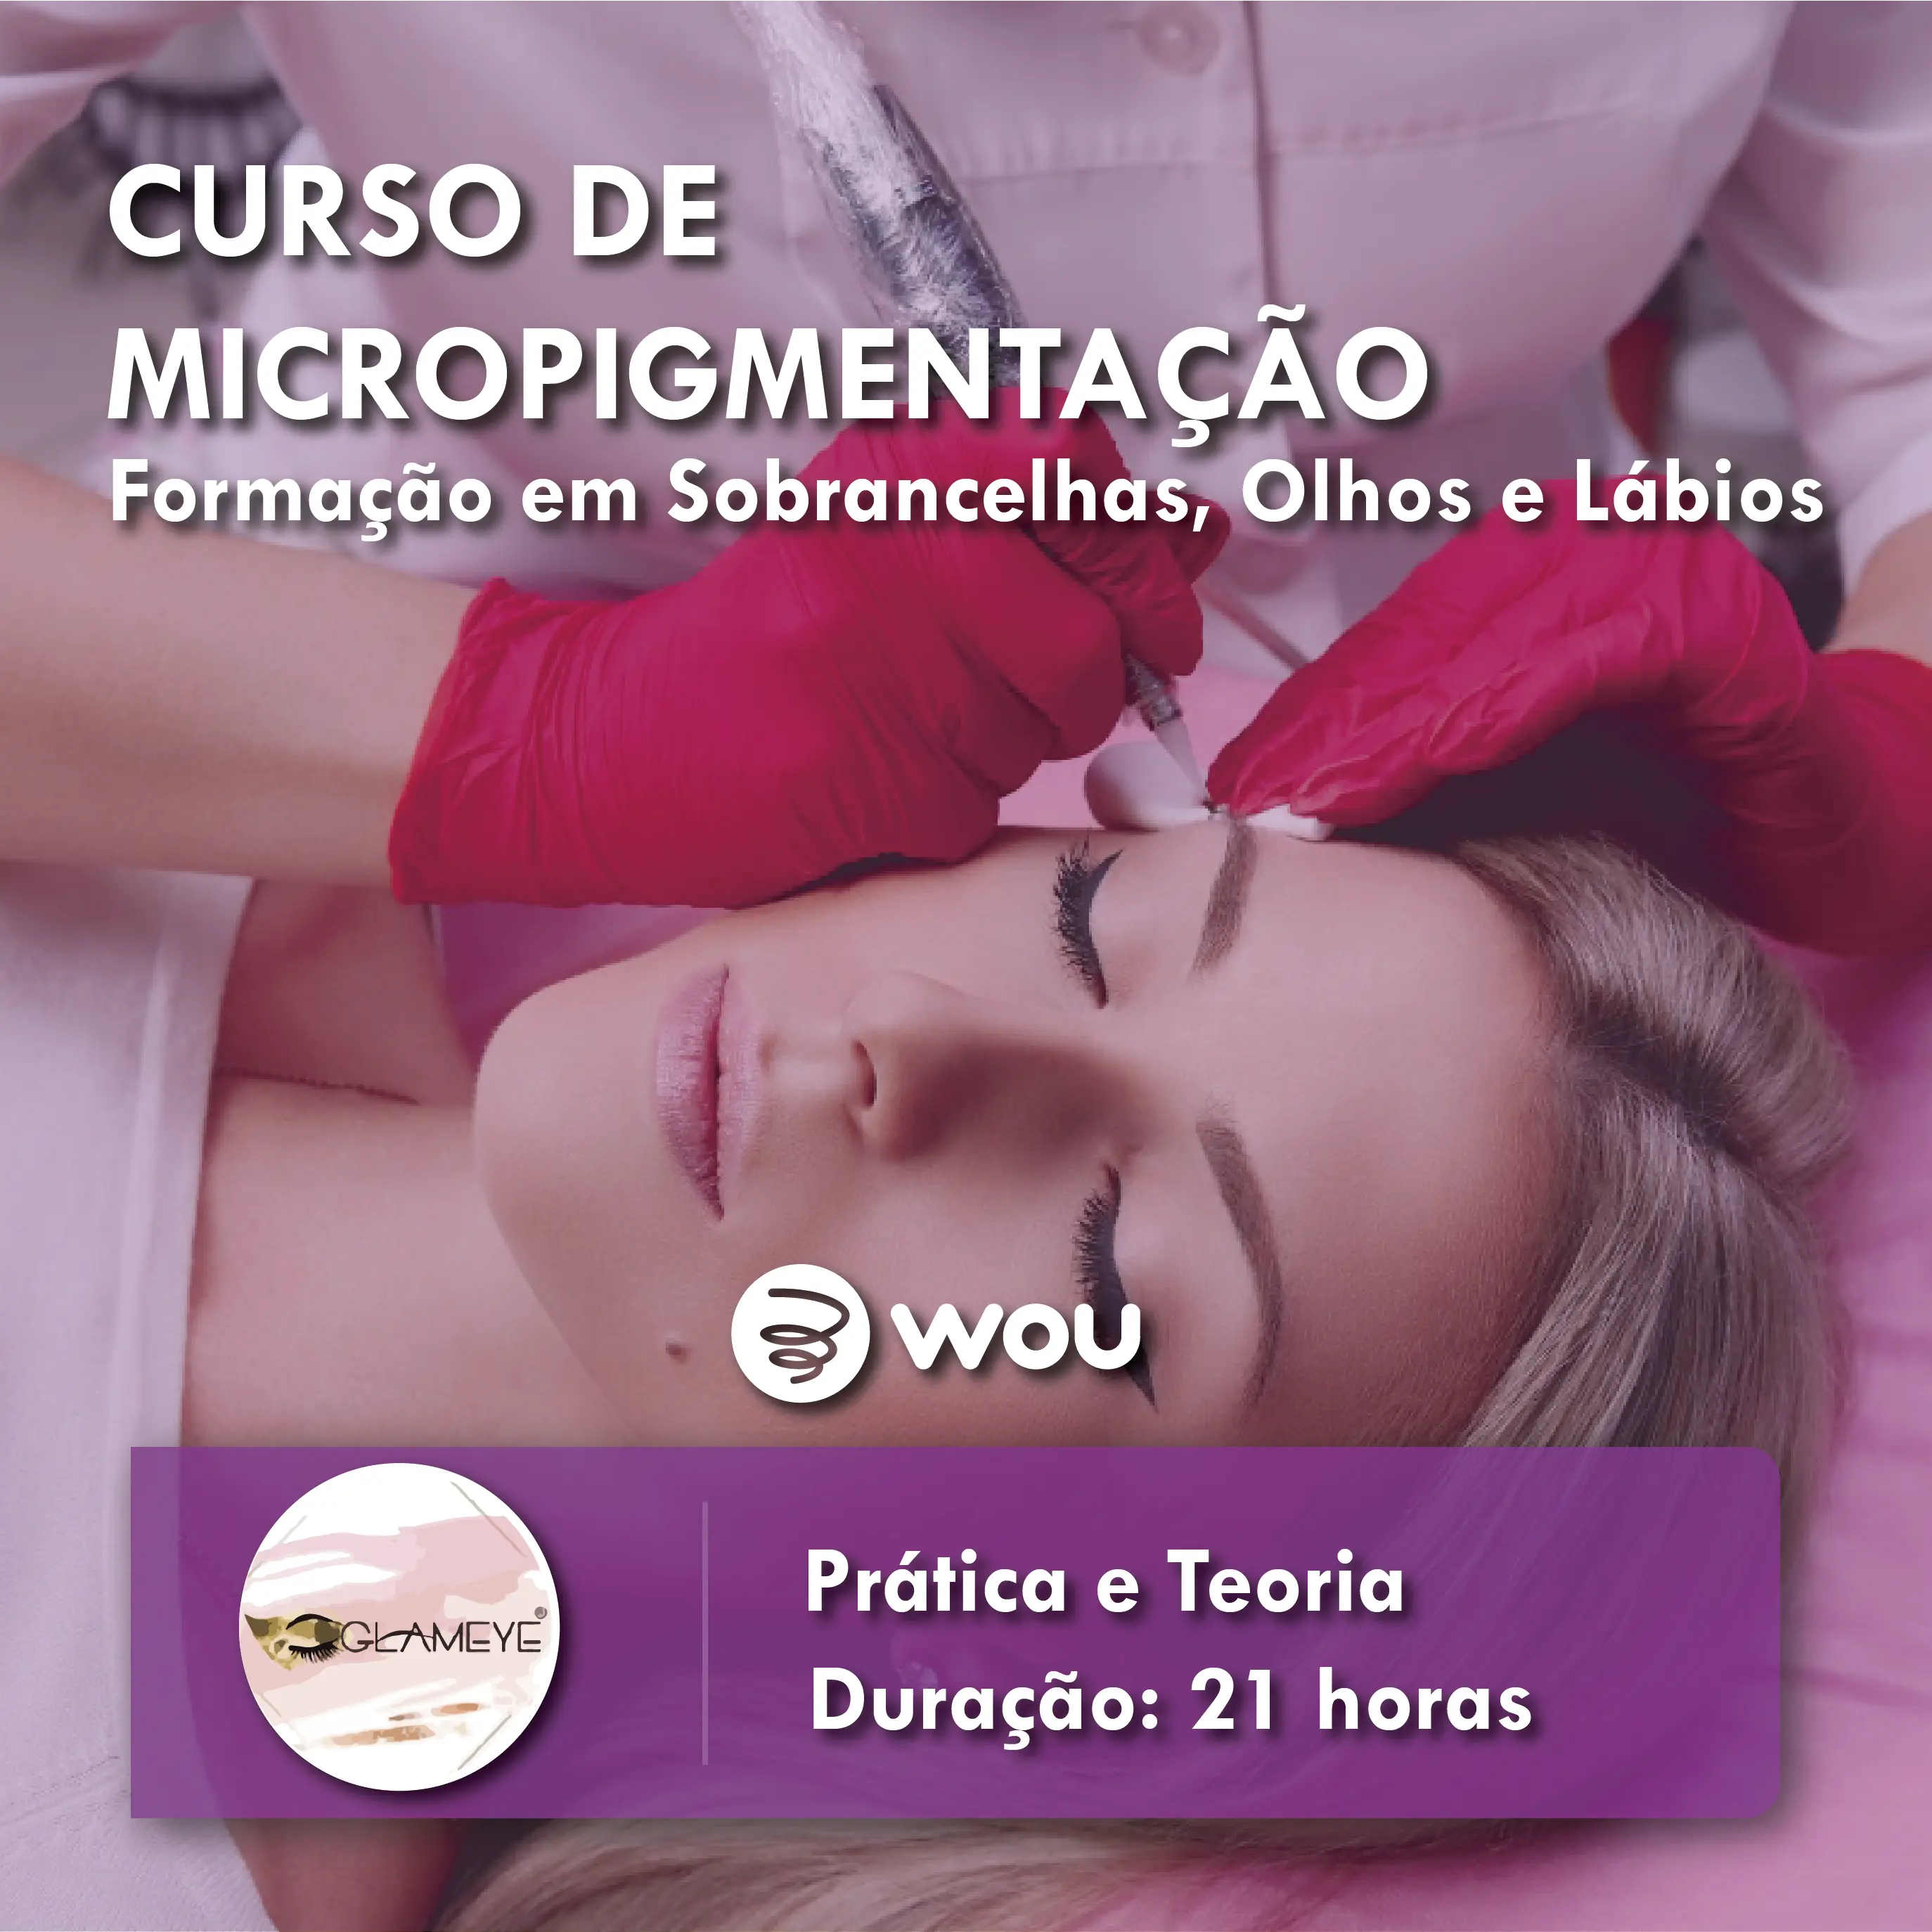 Micropigmentation course in Porto